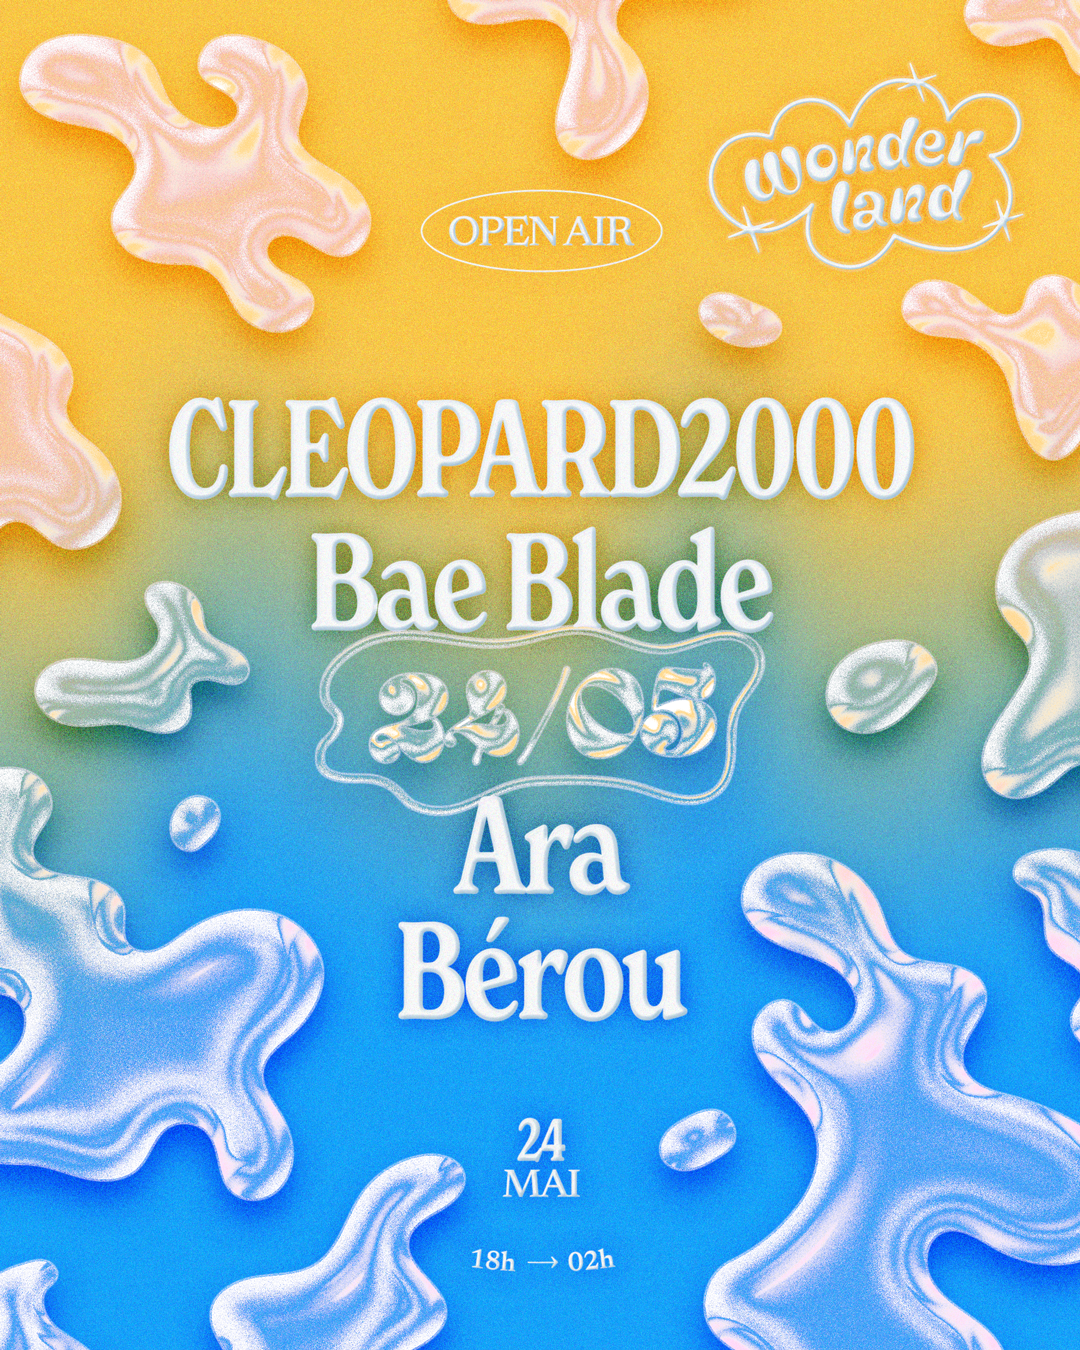 Wonderland invite: Cleopard2000 - Bae Blade - Ara - Bérou - フライヤー表